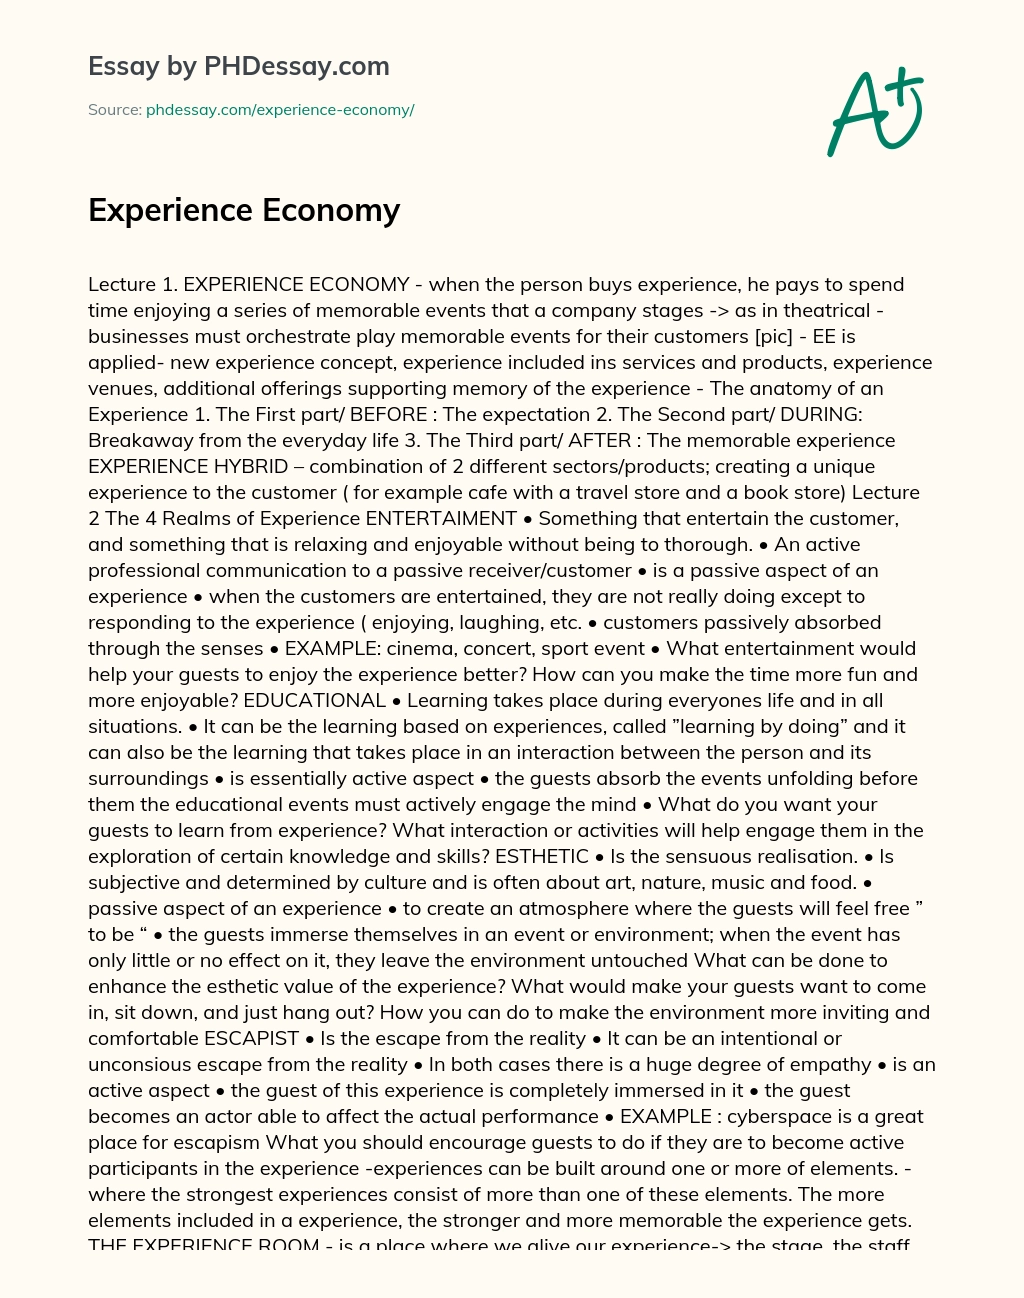 Experience Economy essay